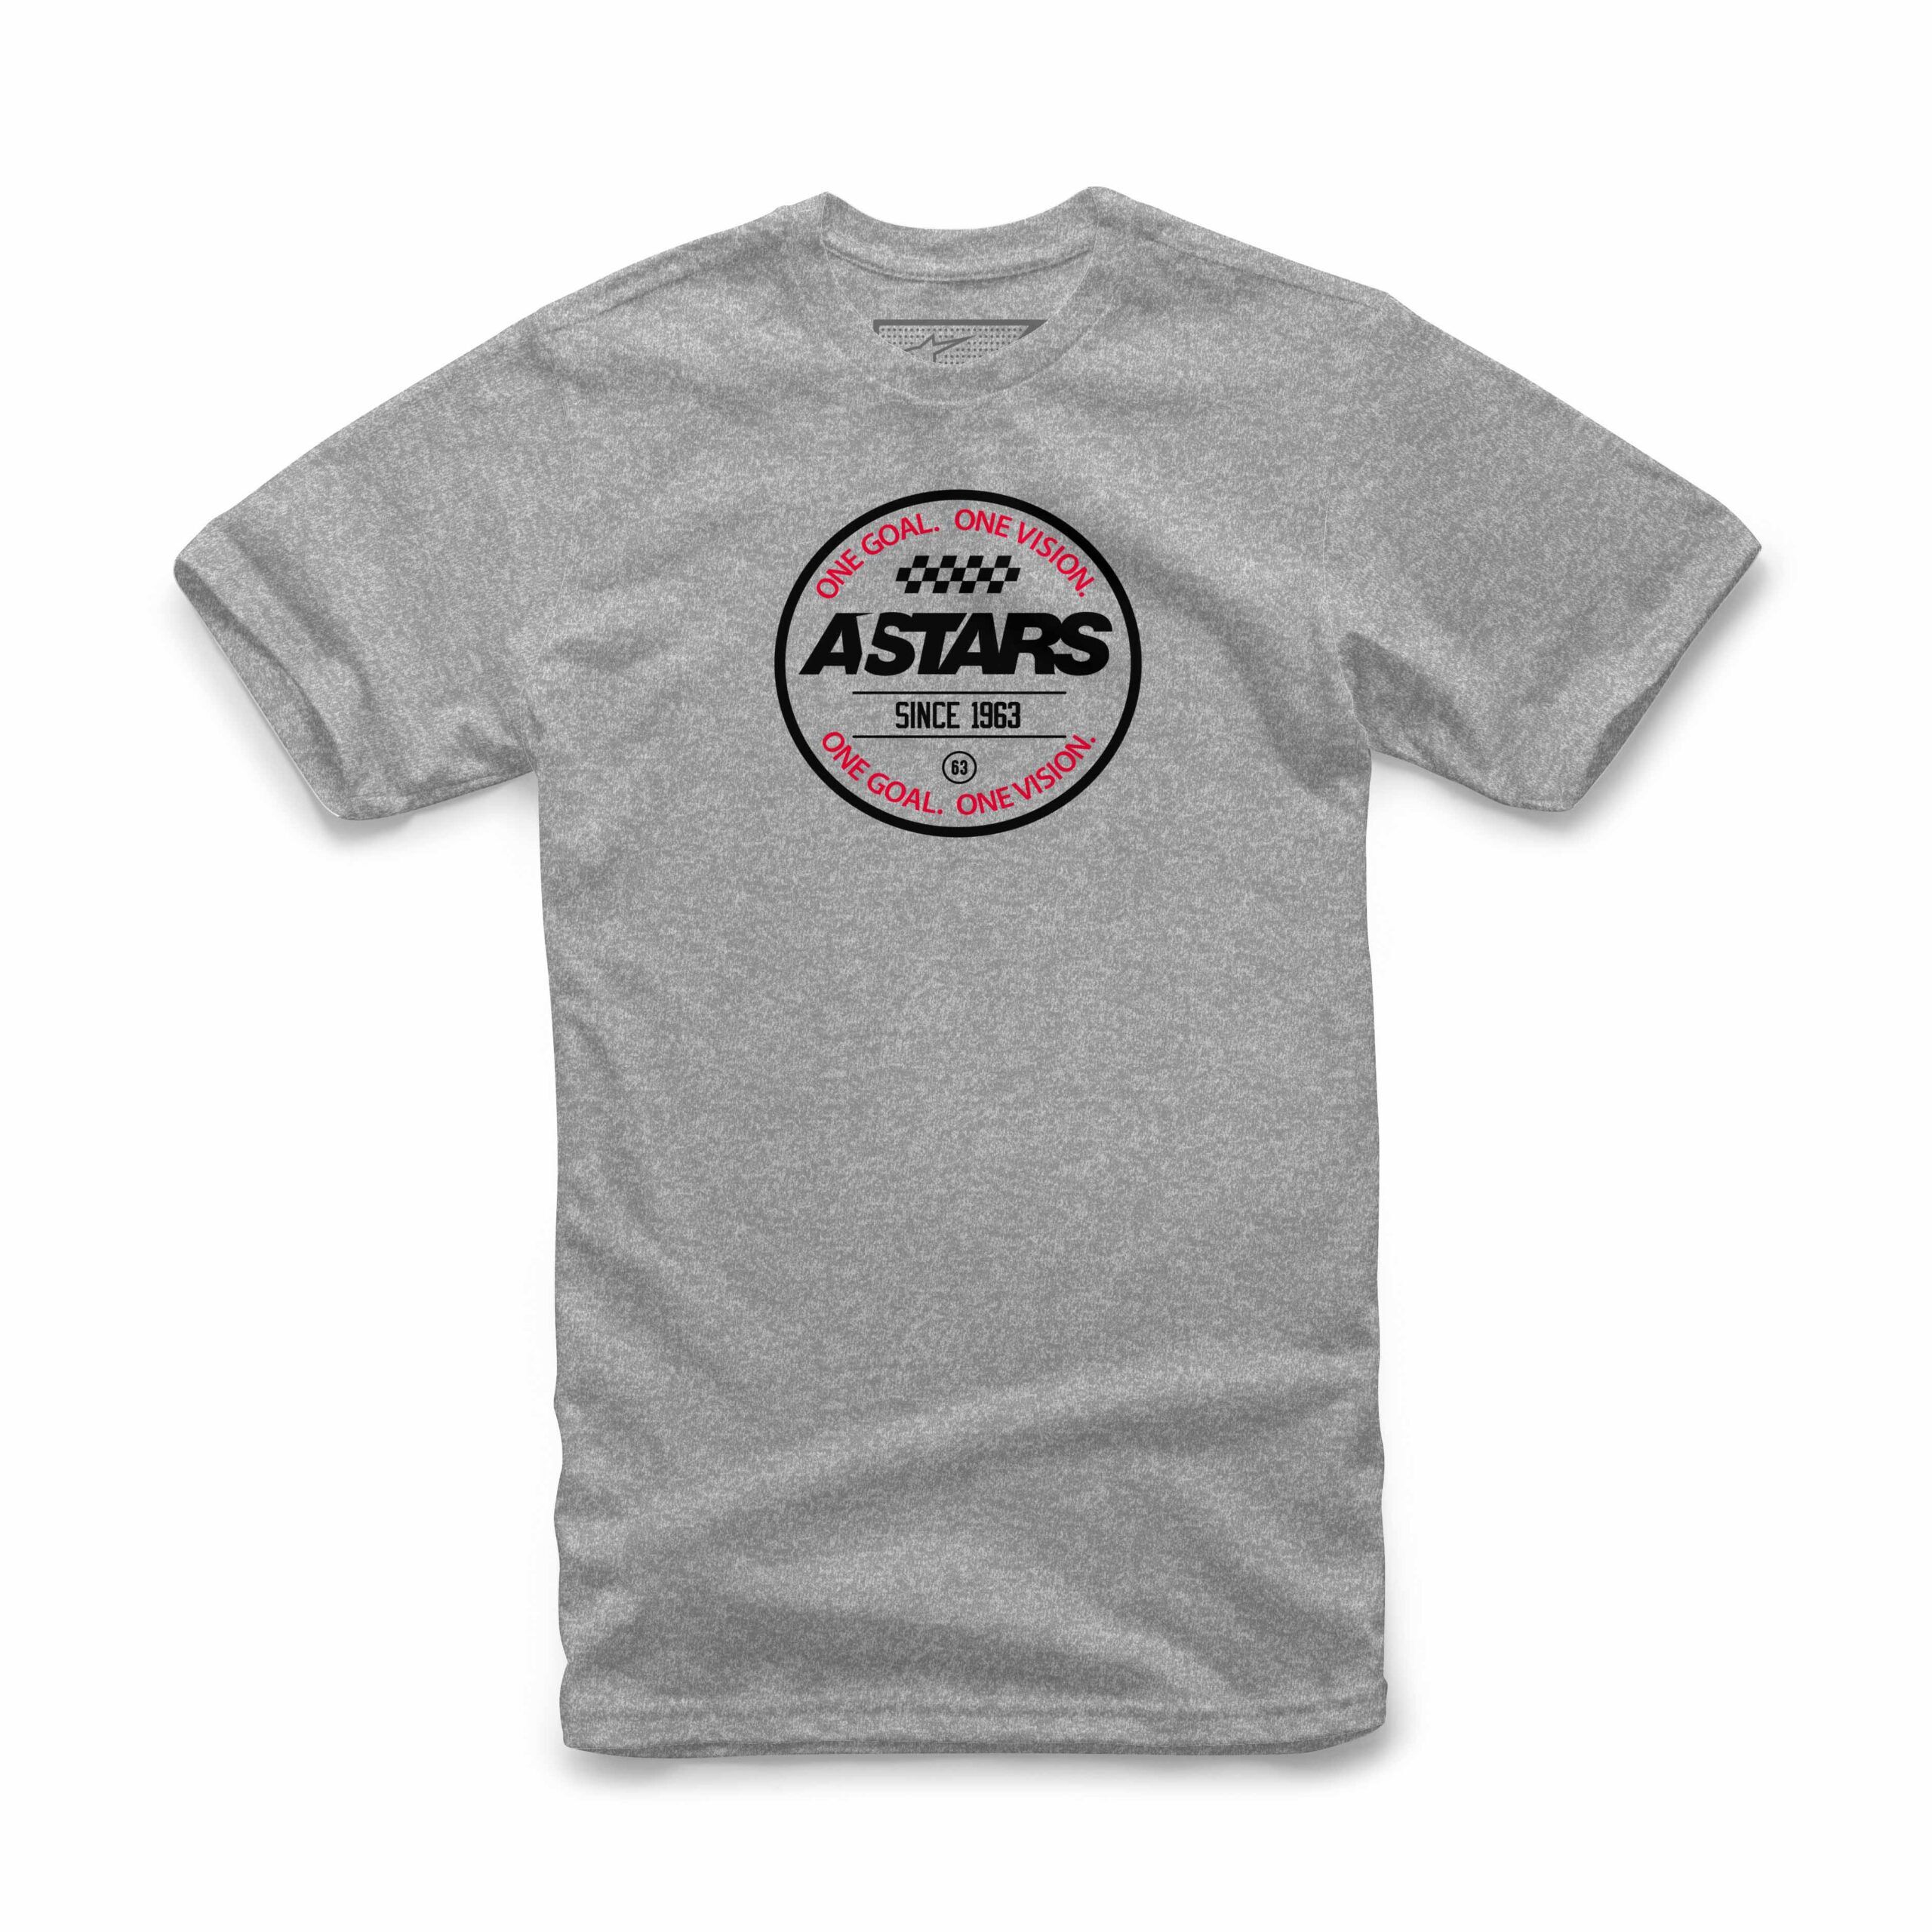 Alpinestars One Goal One Vision - grijze mannen T-shirt